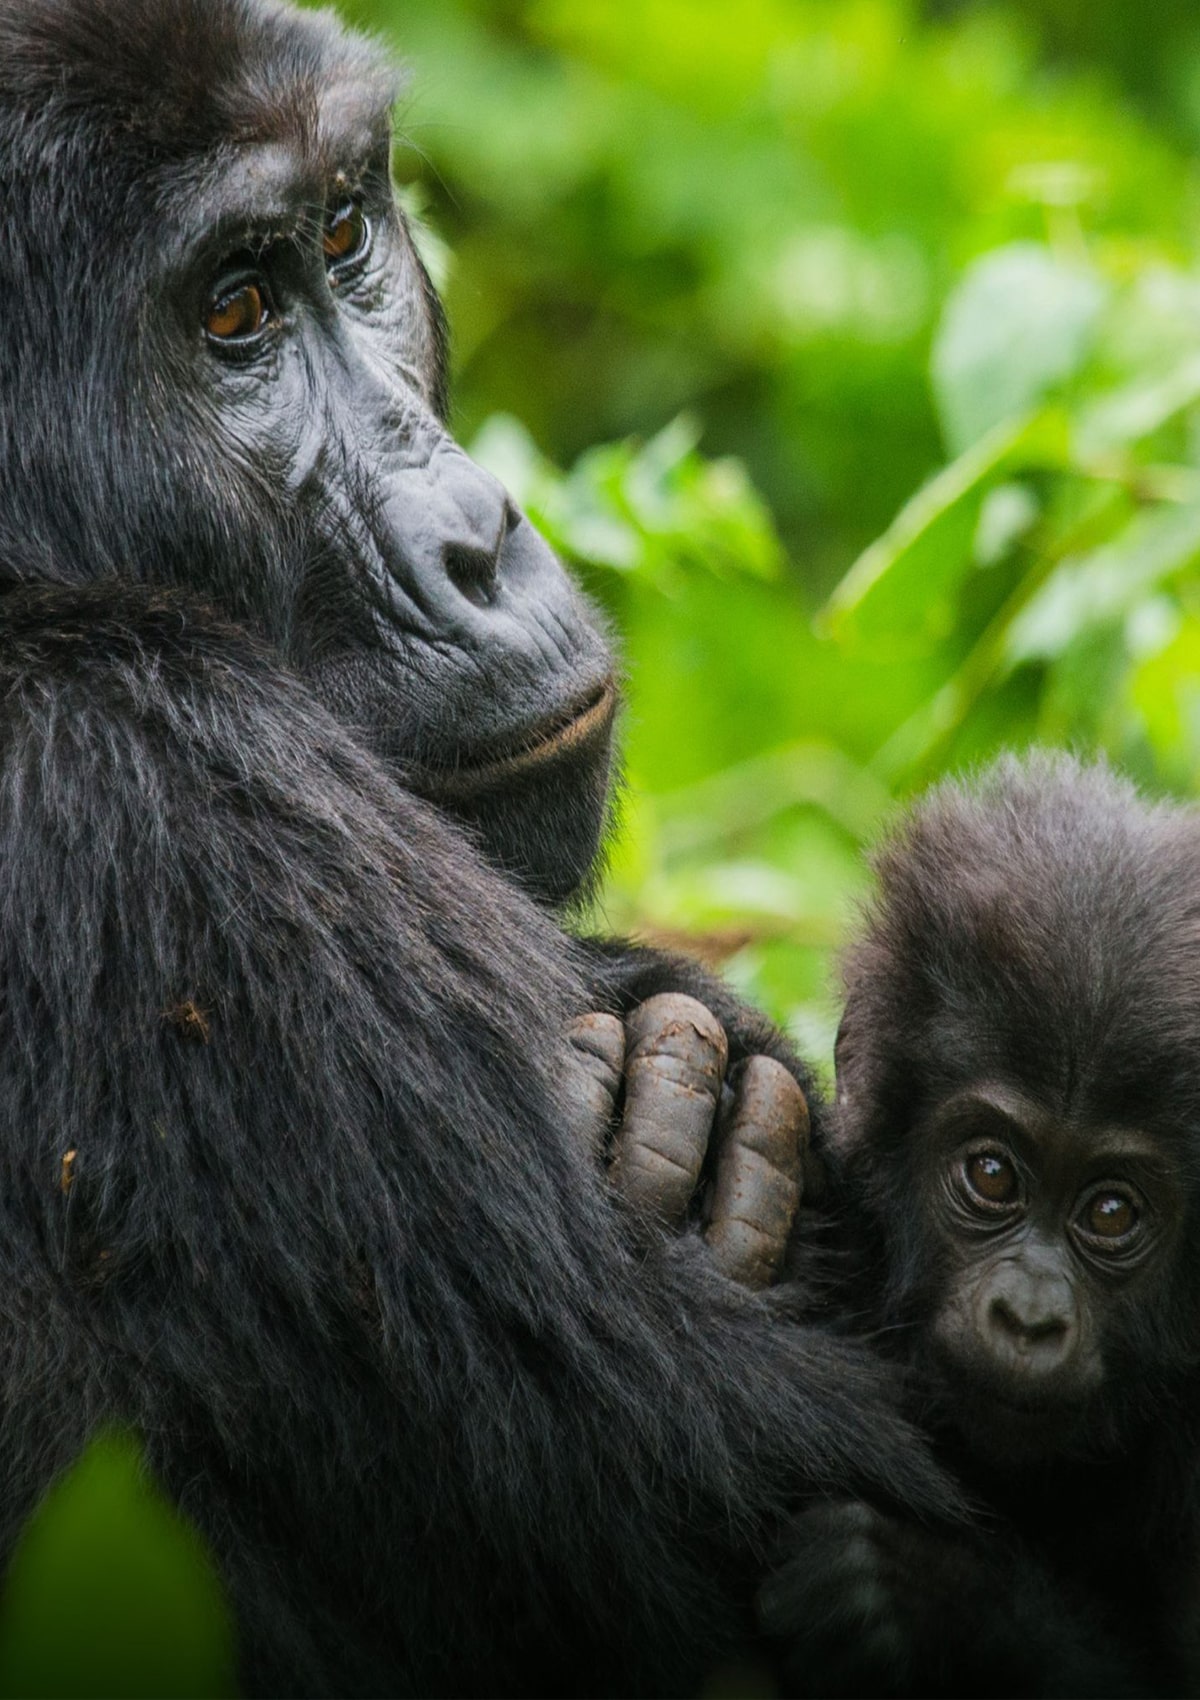 Gorilla trek in Uganda